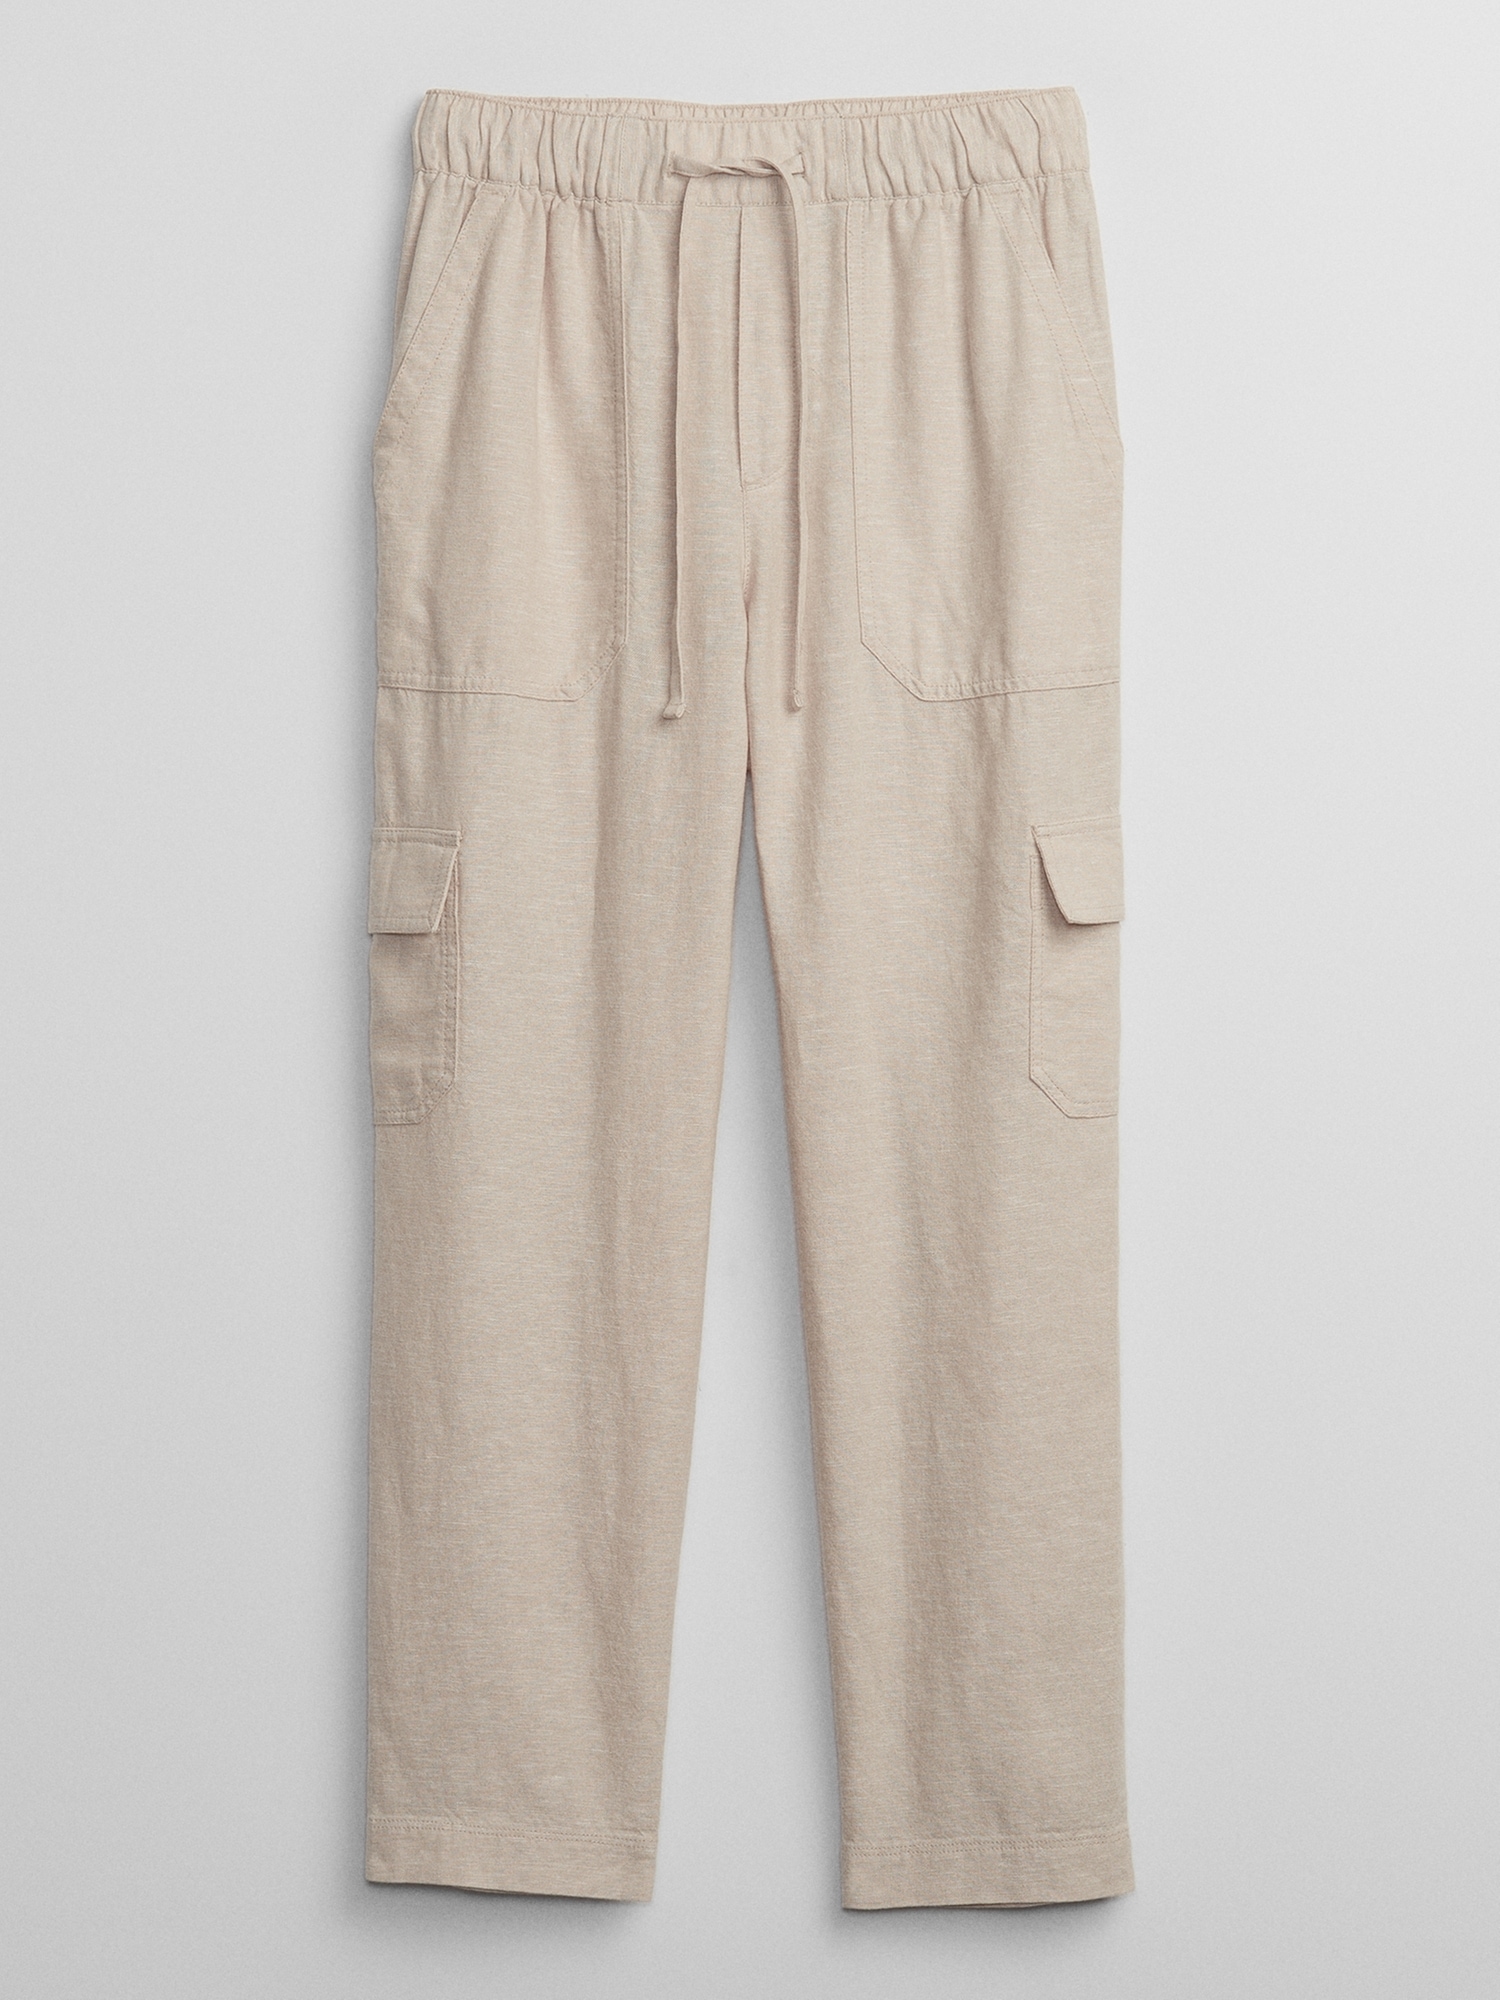 Ladies - Green Linen-Blend Cargo Pants - Size: 20 - H&M